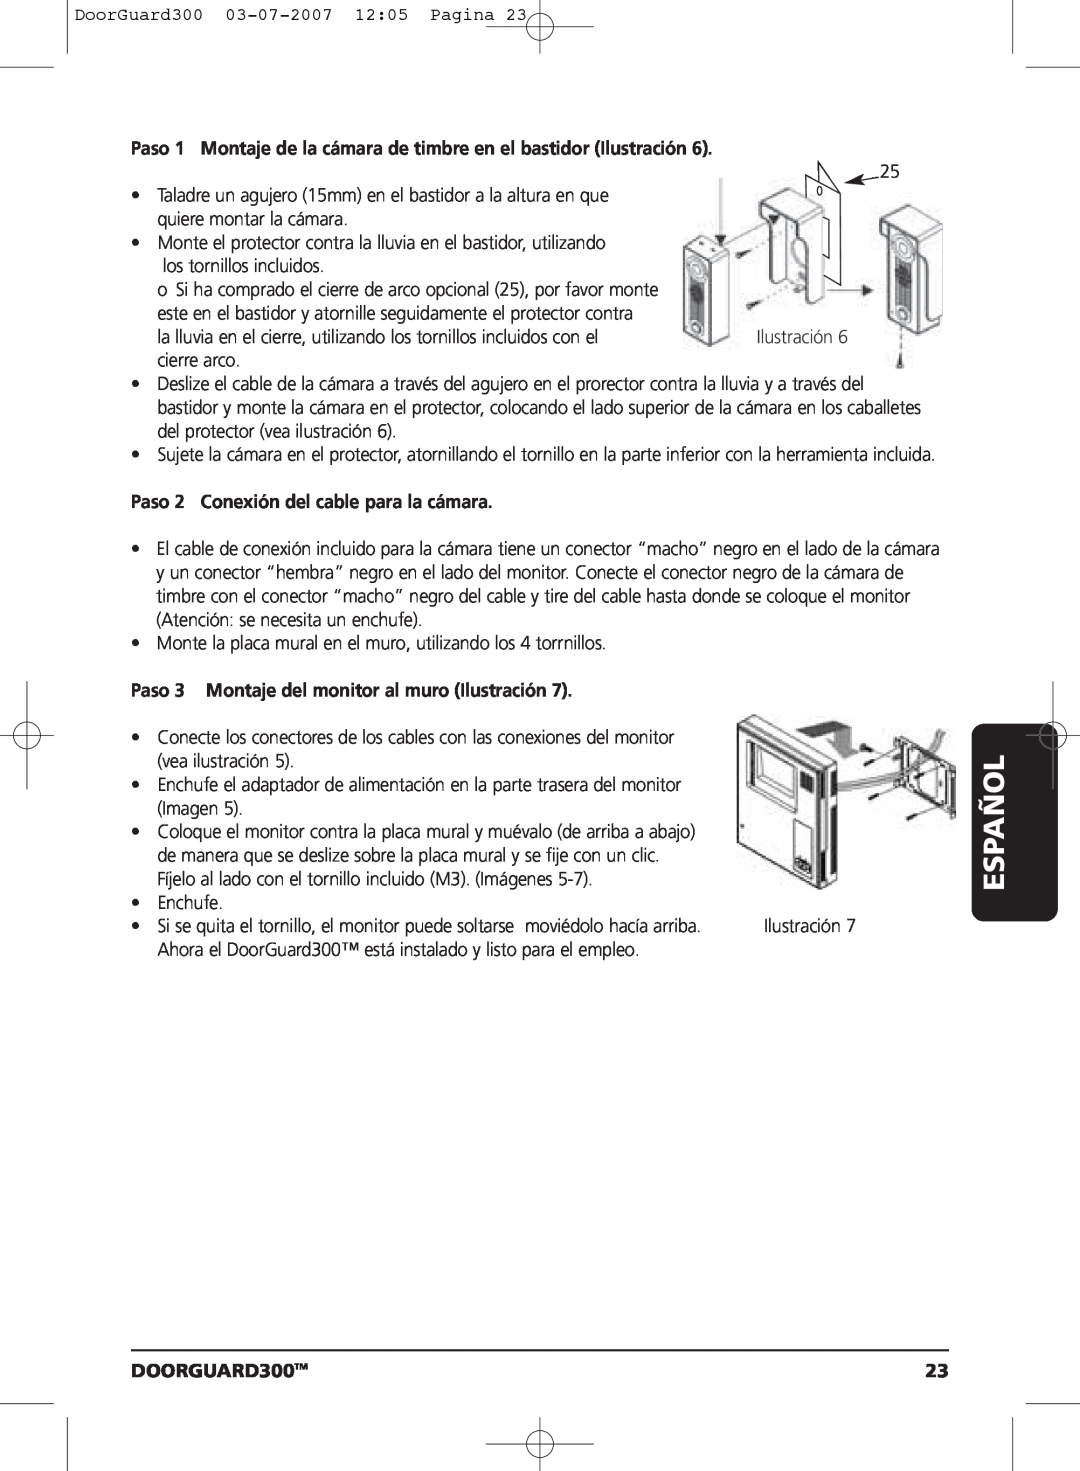 Marmitek DOORGUARD300TM user manual Paso 1 Montaje de la cámara de timbre en el bastidor Ilustración, Español 